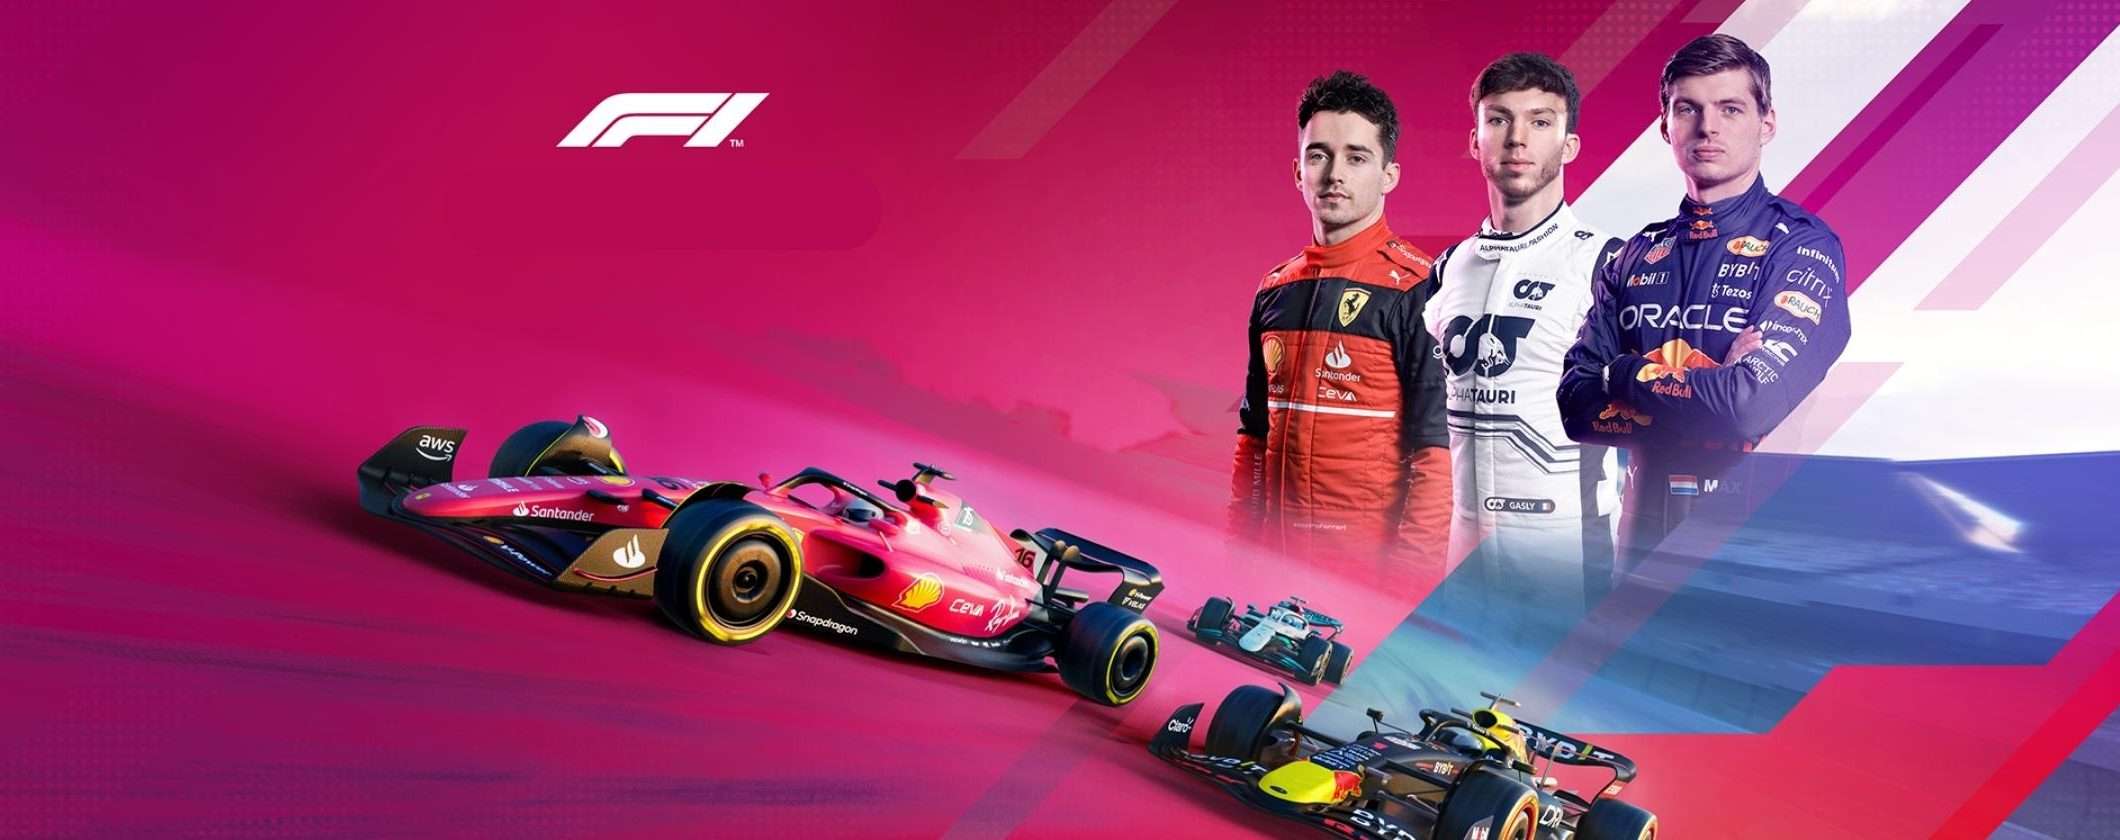 La Formula 1 sceglie il mercato NFT per promuovere le corse